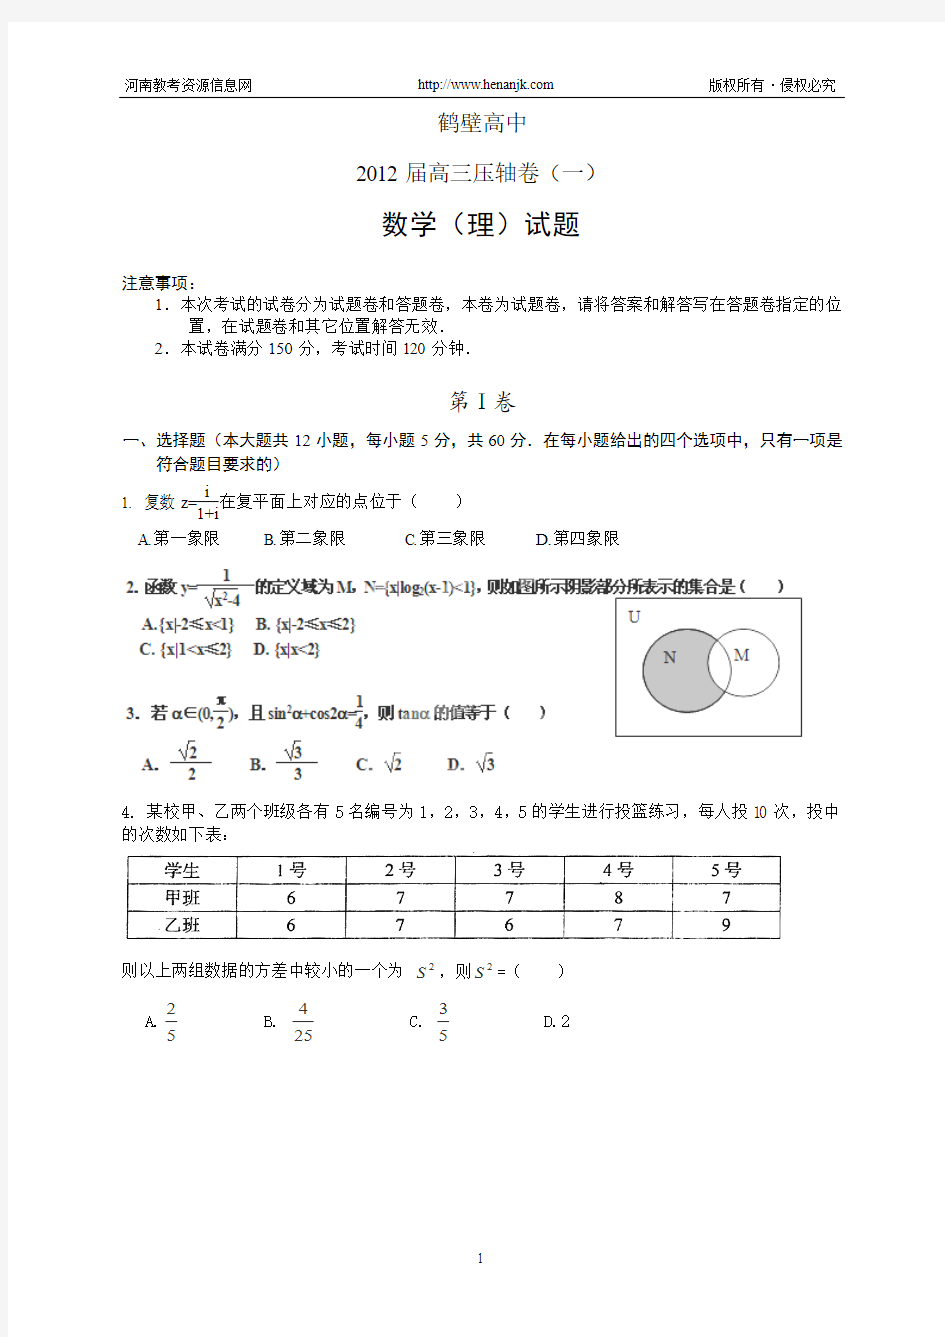 鹤壁高中2012届高三压轴卷(一)--数学(理)